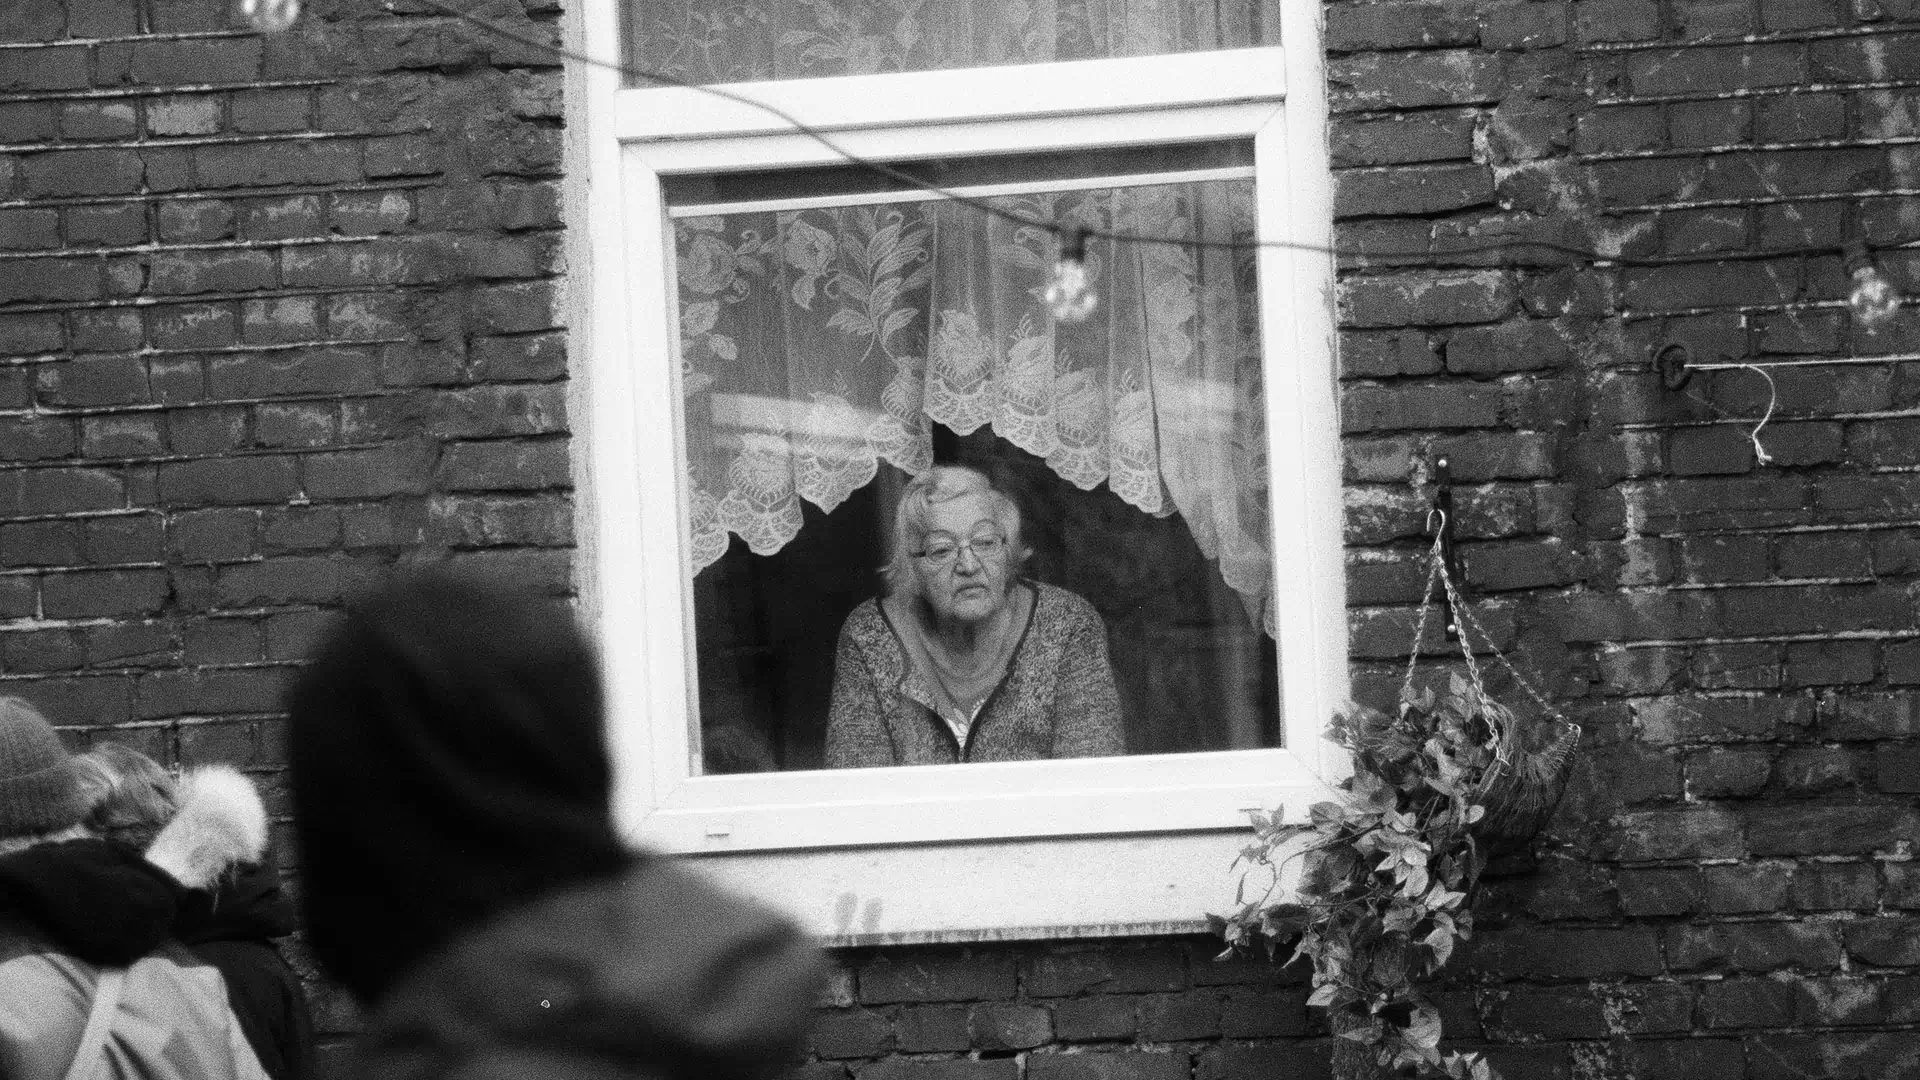 Starsza pani straszy dziecko i zagląda nam w okna. Sąsiadka nie daje nam spokoju [LIST]